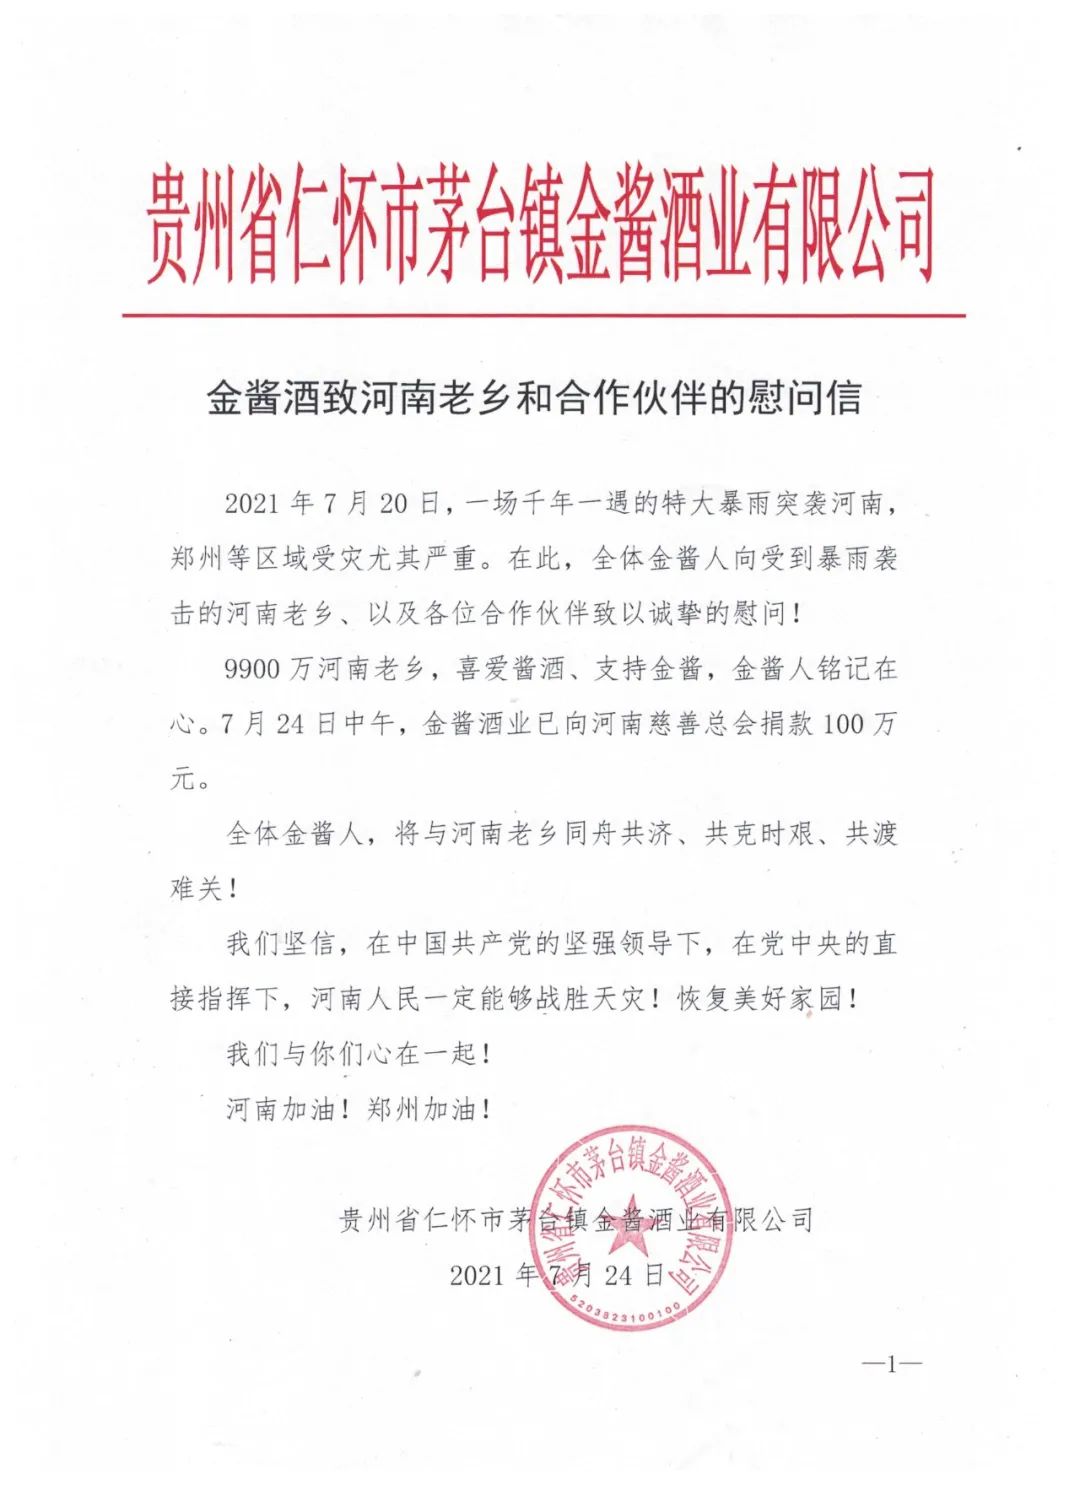 仁怀市茅台镇金酱酒业有限公司积极援助河南捐款100万元